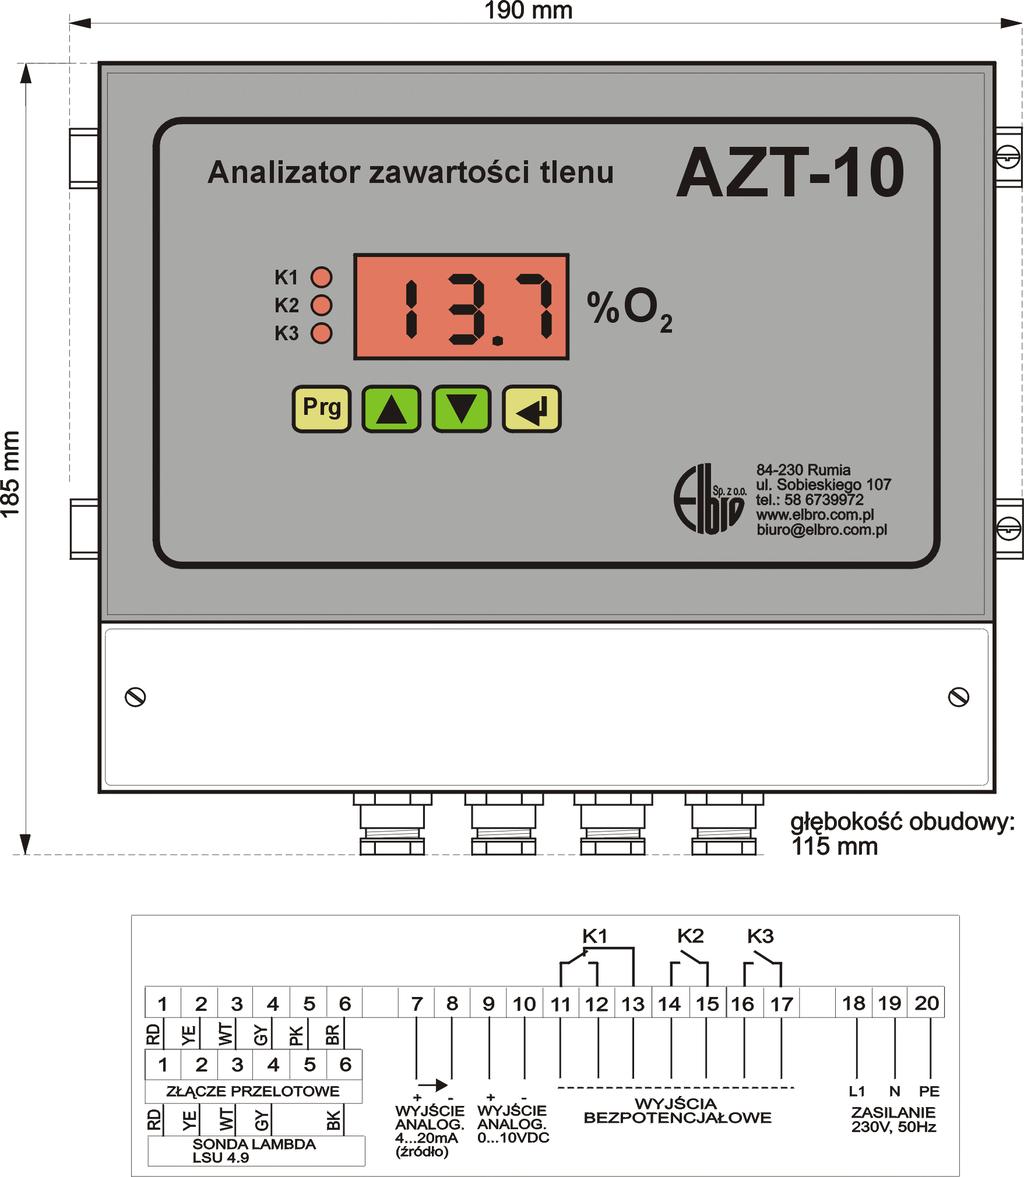 Rys. 1 Widok elewacji analizatora wraz z listwą przyłączeniową Analizator AZT-10 przeznaczony jest do pomiaru zawartości tlenu w spalinach kotłów na biomasę, węgiel, miał węglowy, pelety.